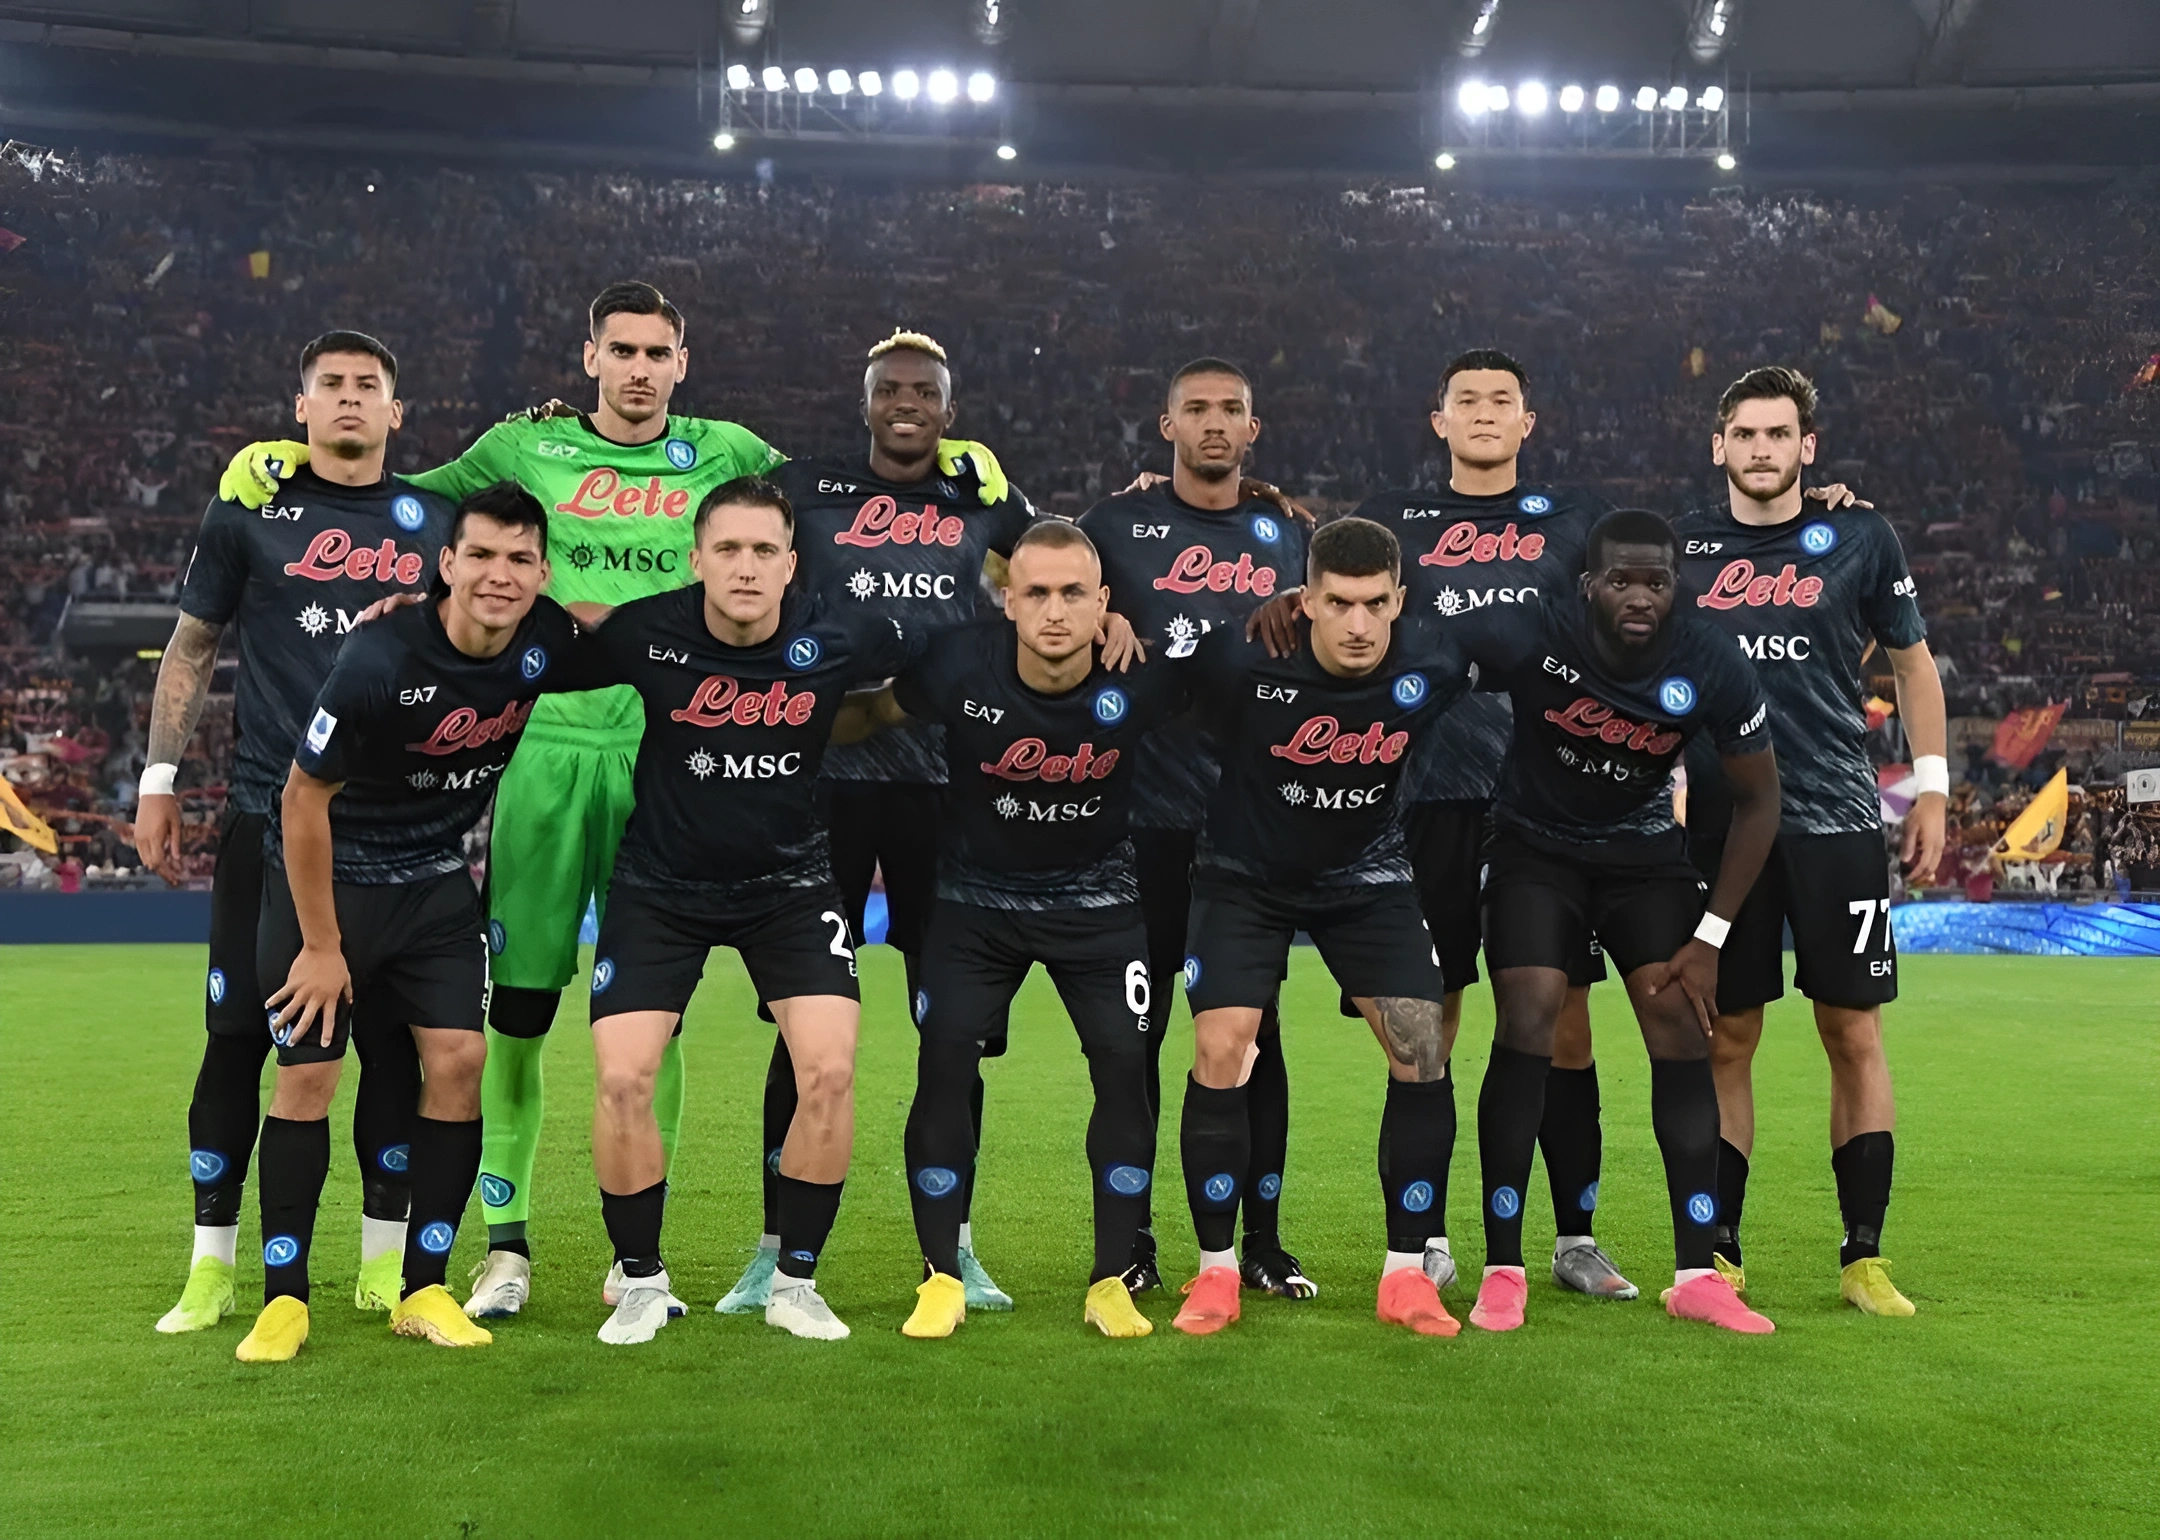 Calciatori del Napoli in posa per una fotografia di squadra